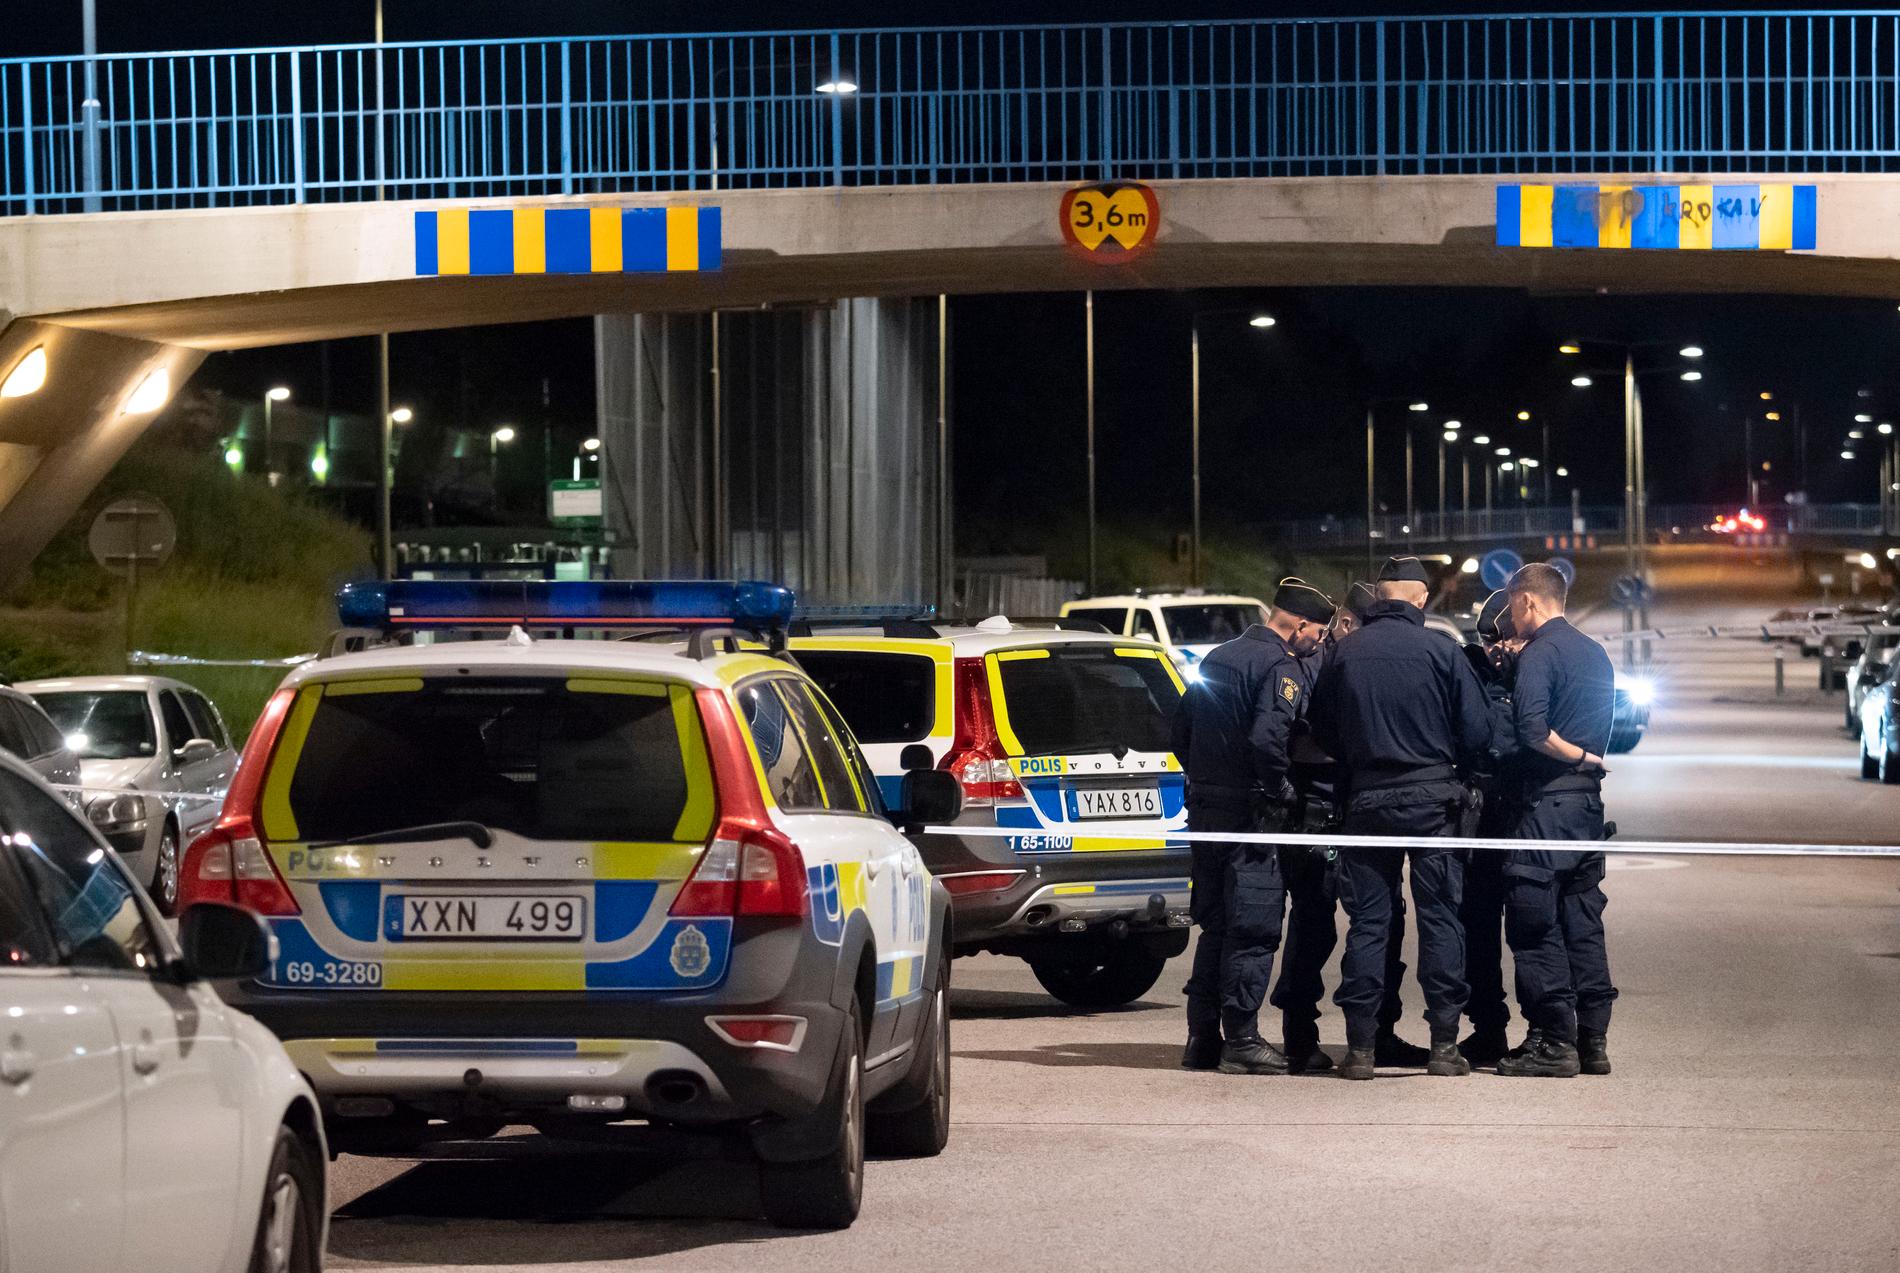 Polis på plats i Kroksbäck i Malmö.